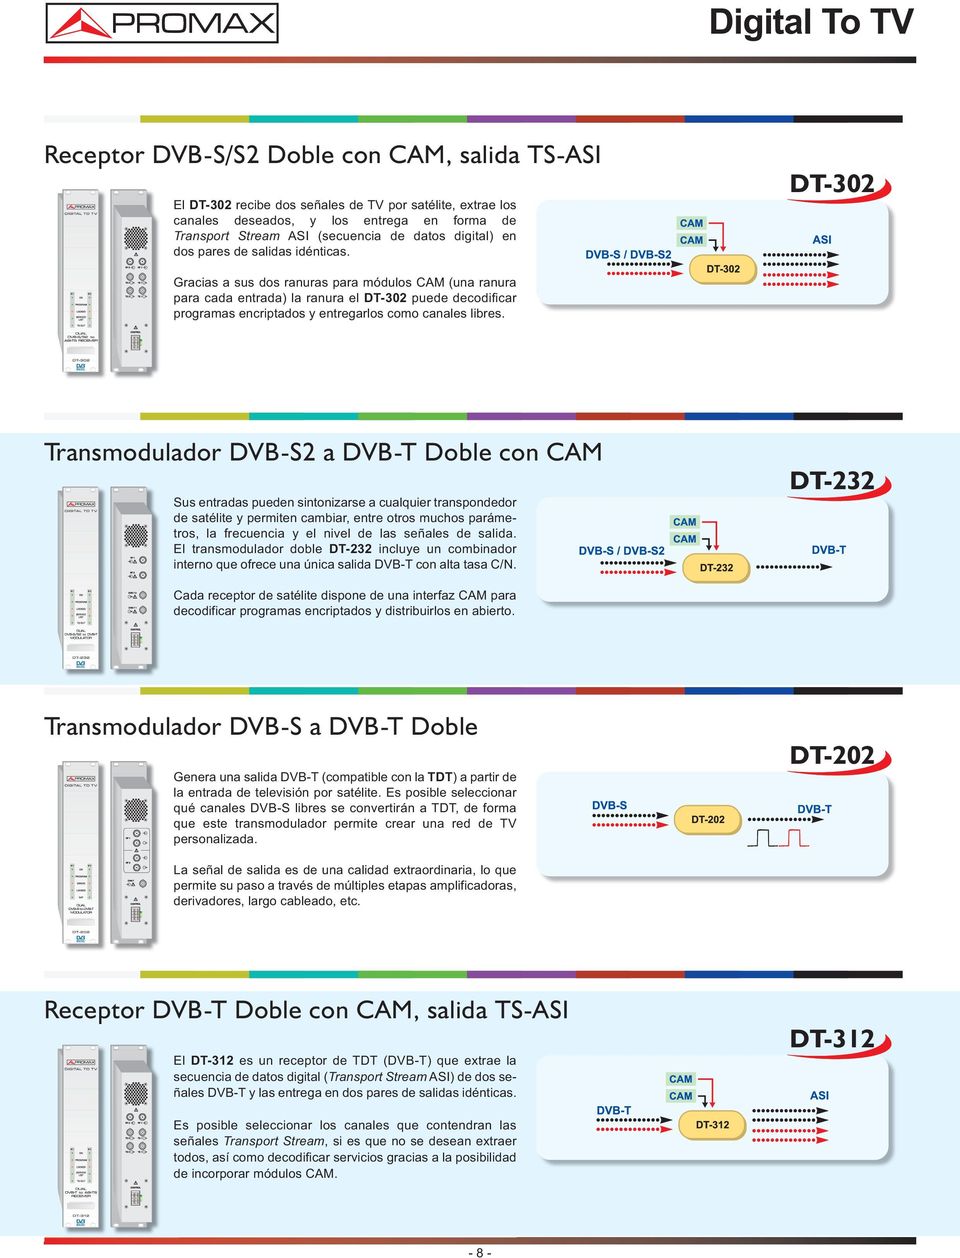 DT-302 Gracias a sus dos ranuras para módulos CAM (una ranura para cada entrada) la ranura el DT-302 puede decodificar programas encriptados y entregarlos como canales libres.